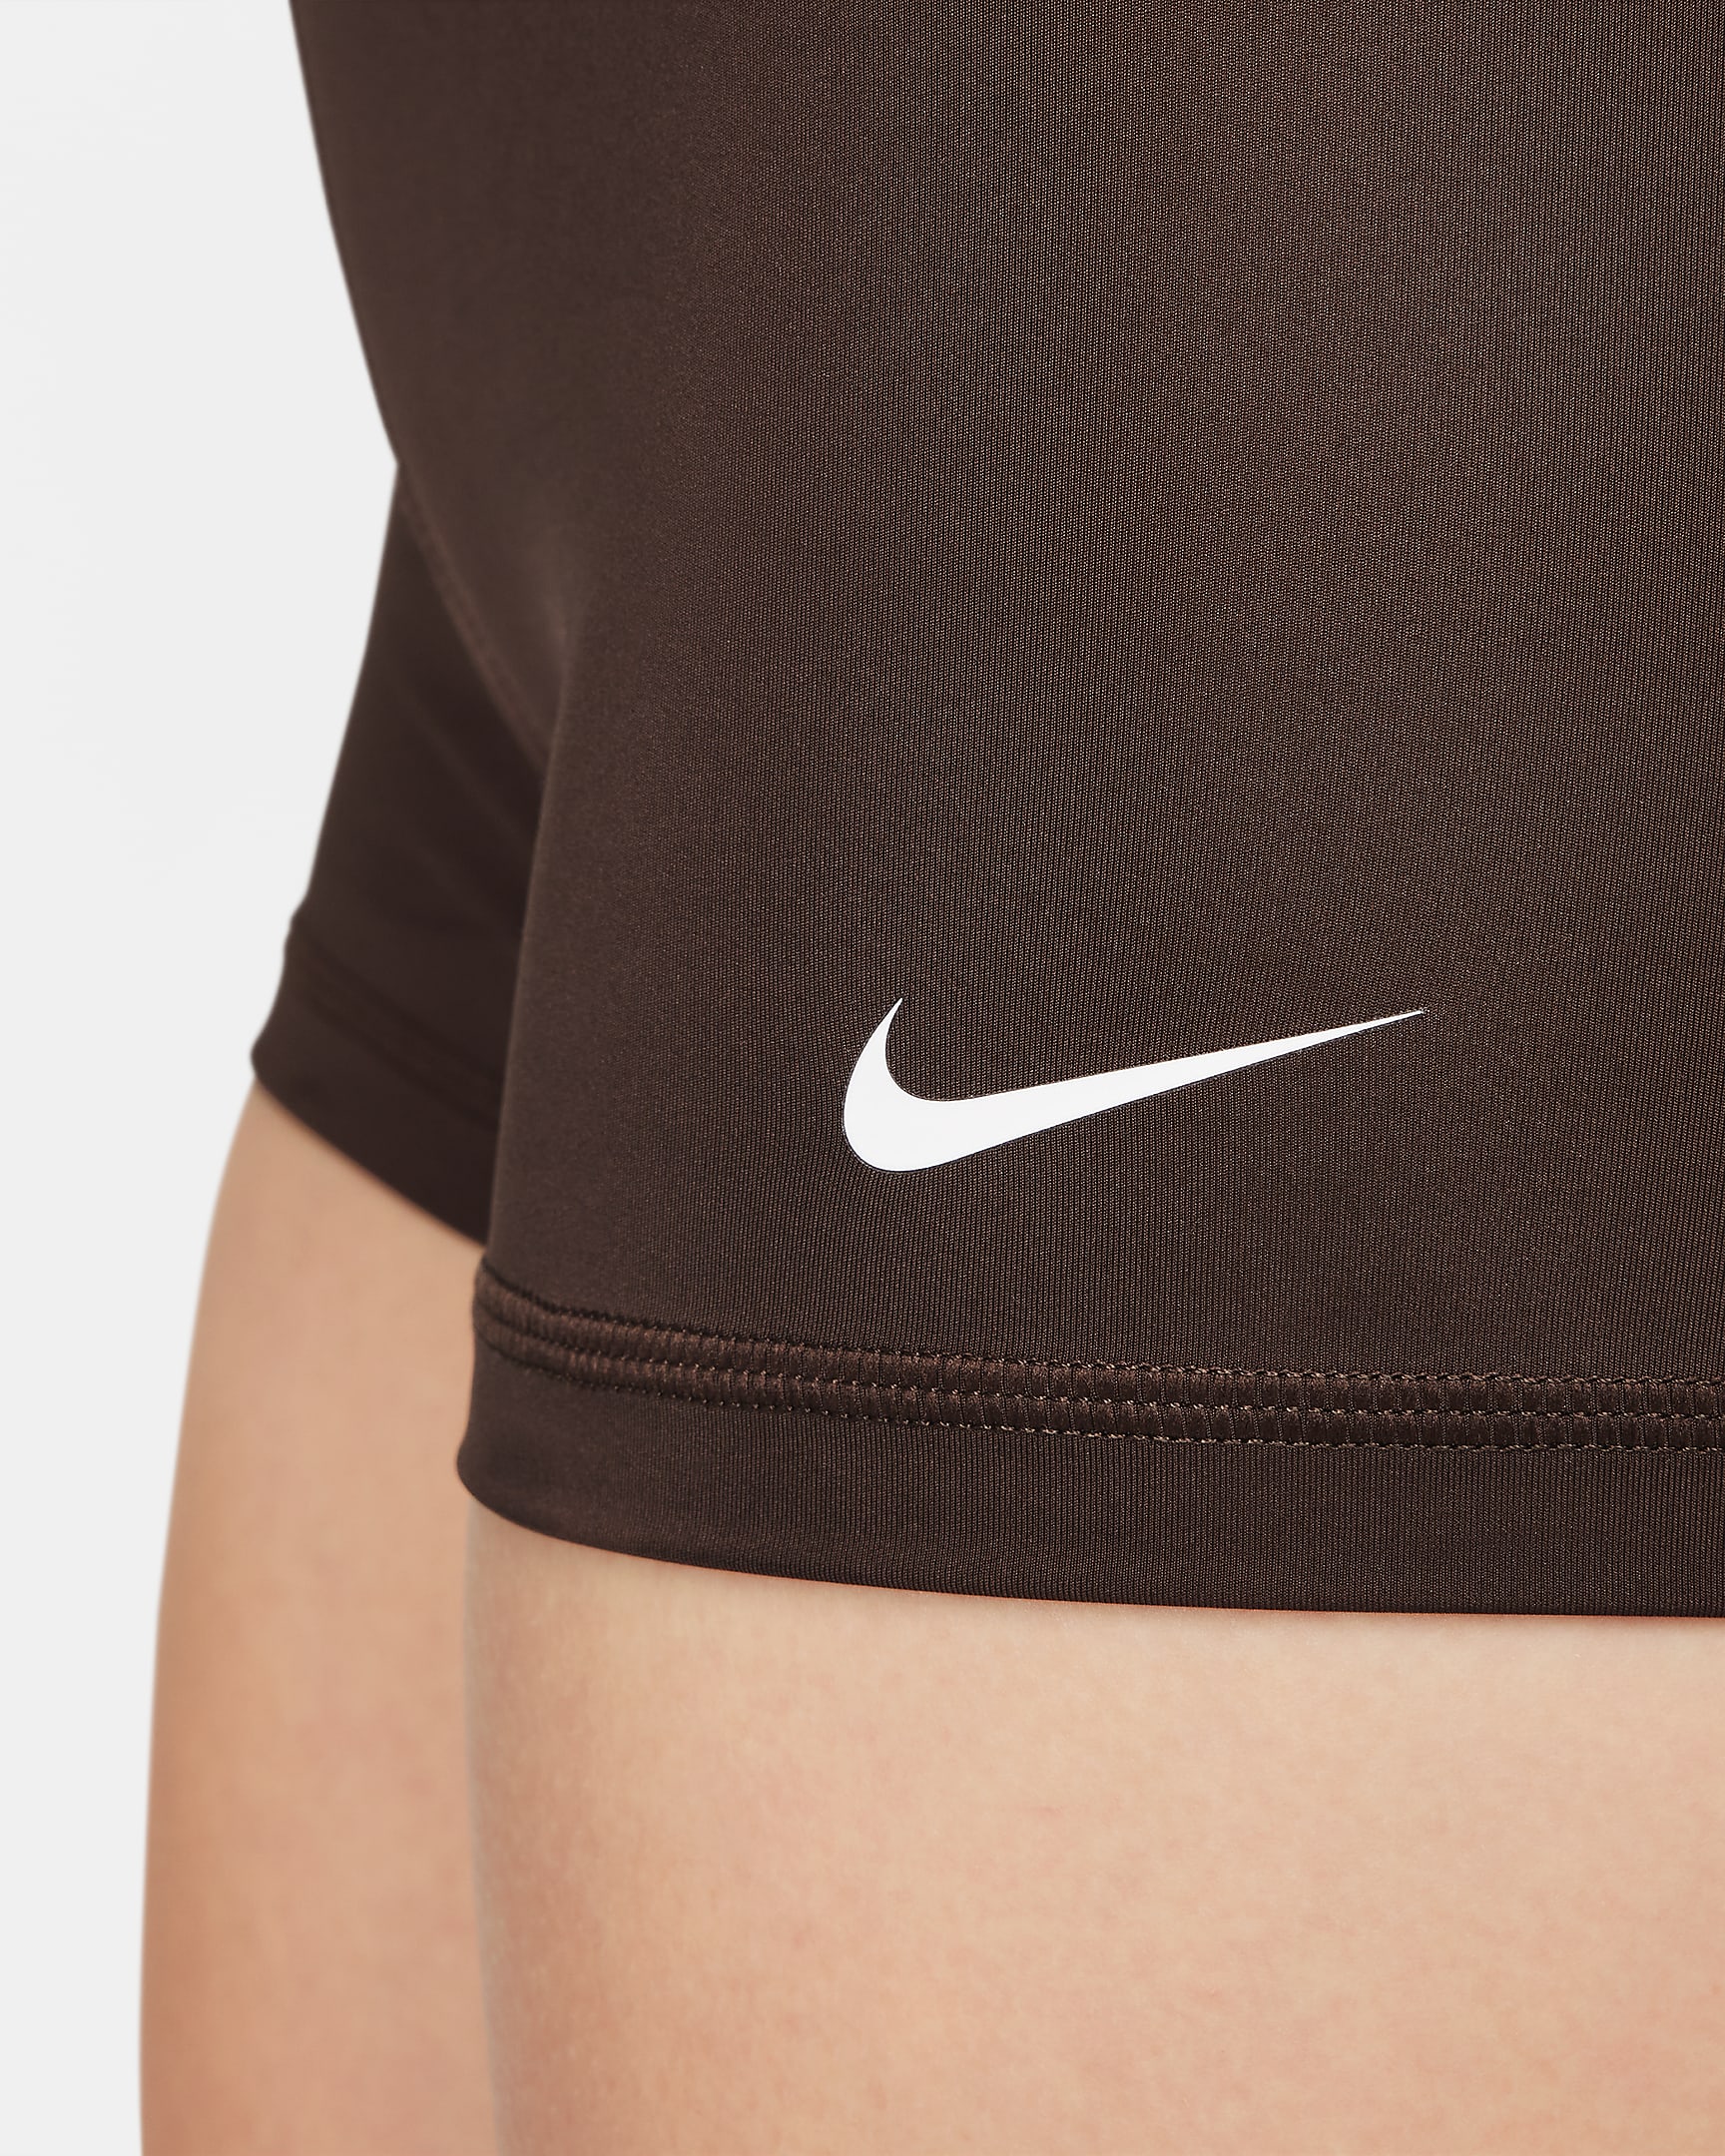 Nike Pro Pantalón corto de 8 cm - Mujer - Baroque Brown/Blanco